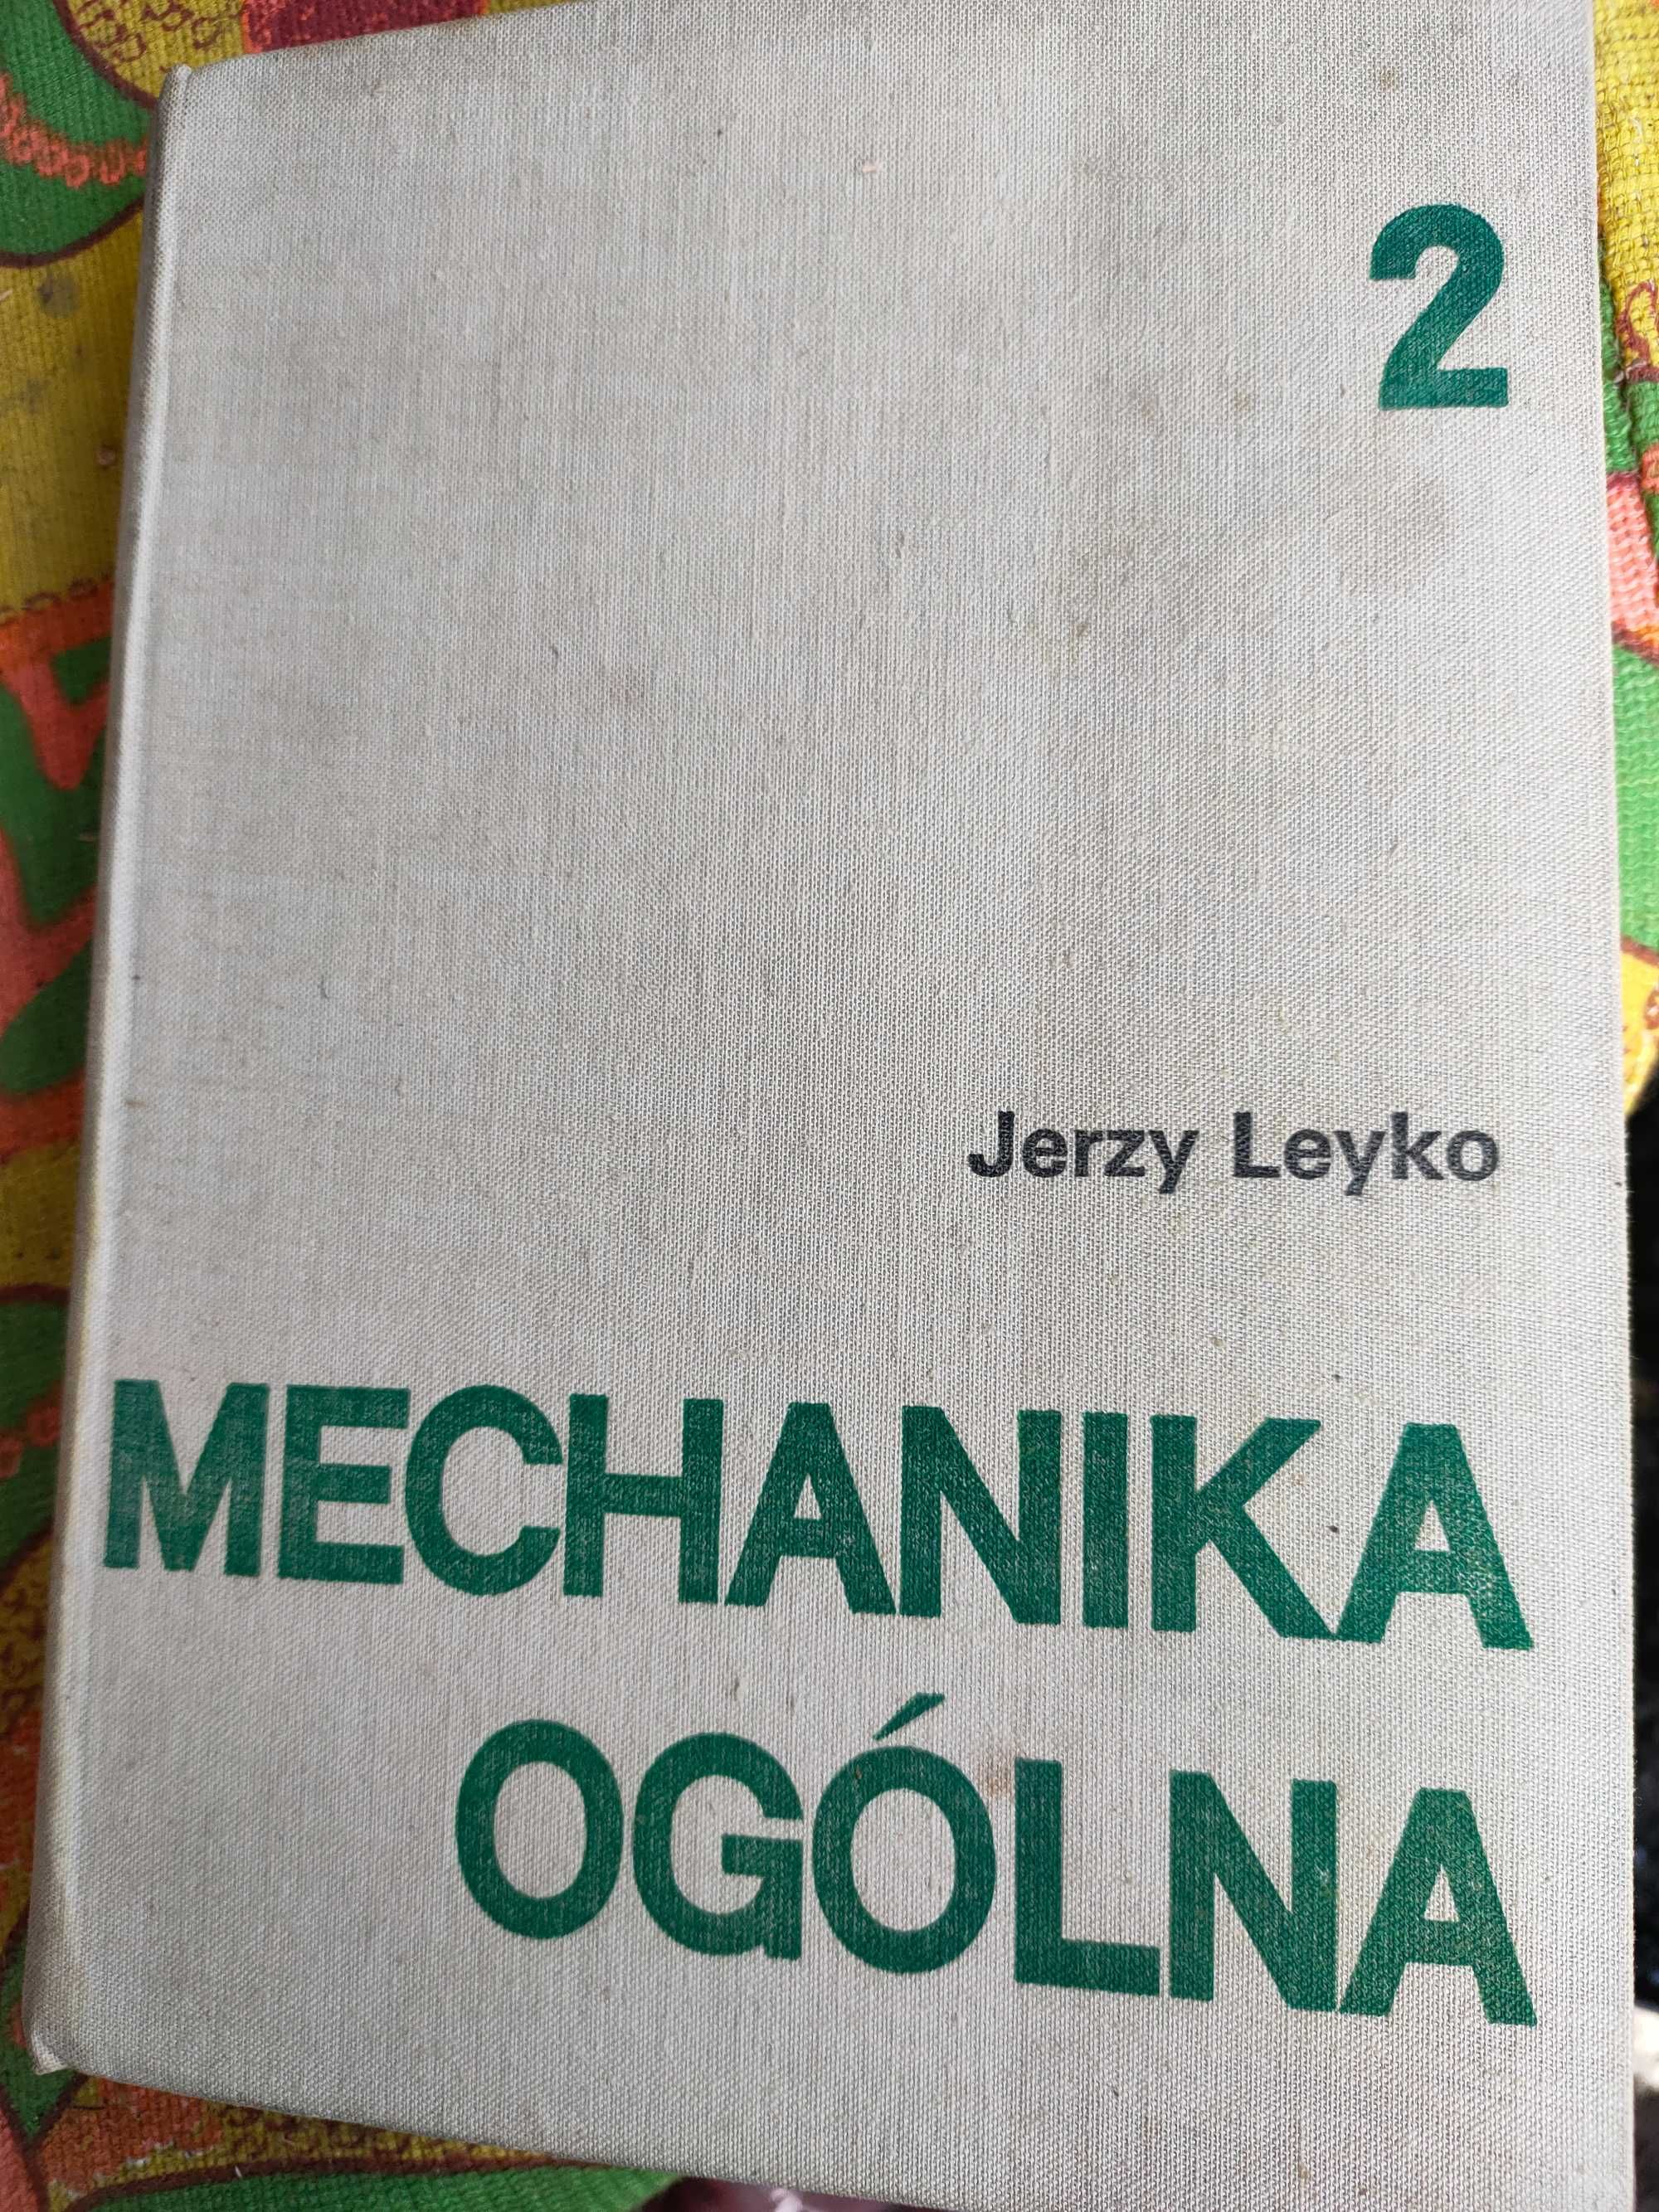 Mechanika Ogólna Jerzy Leyko.